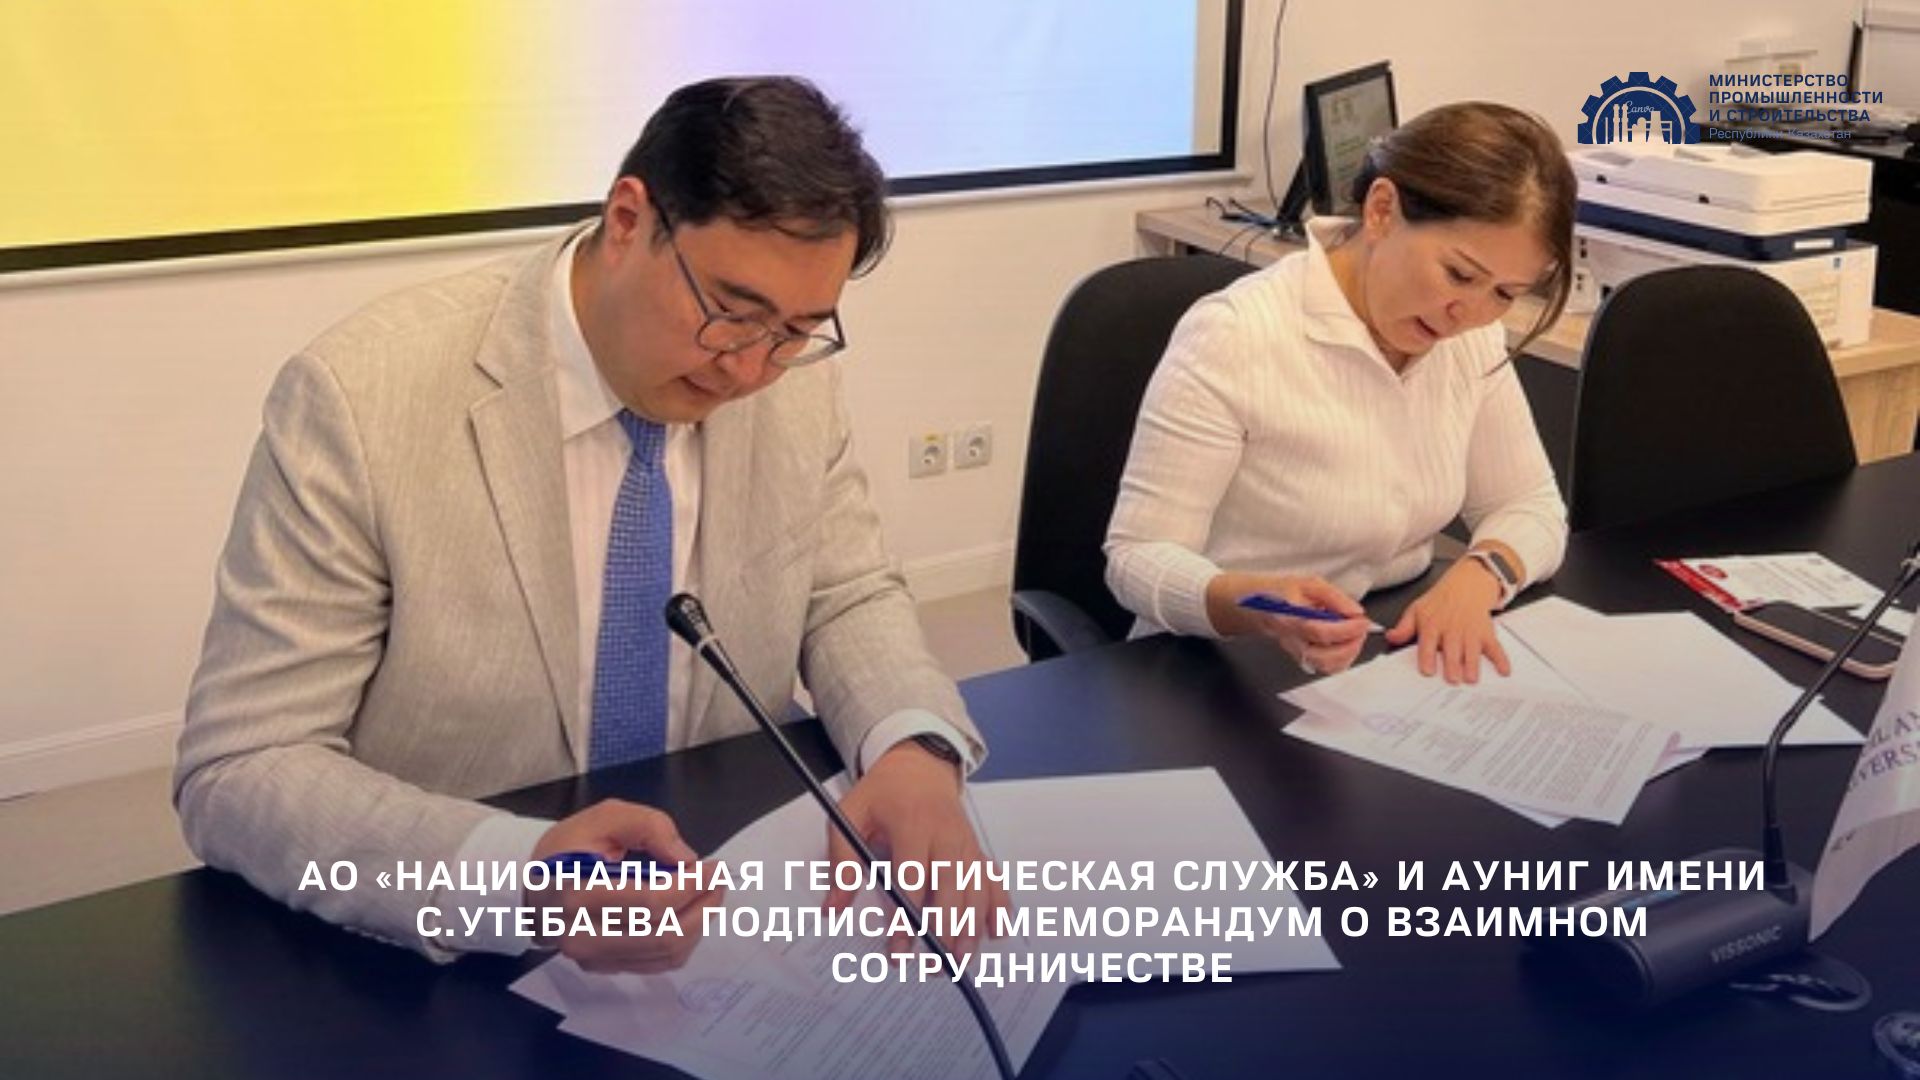 АО «Национальная геологическая служба» и АУНиГ имени С.Утебаева подписали Меморандум о взаимном сотрудничестве